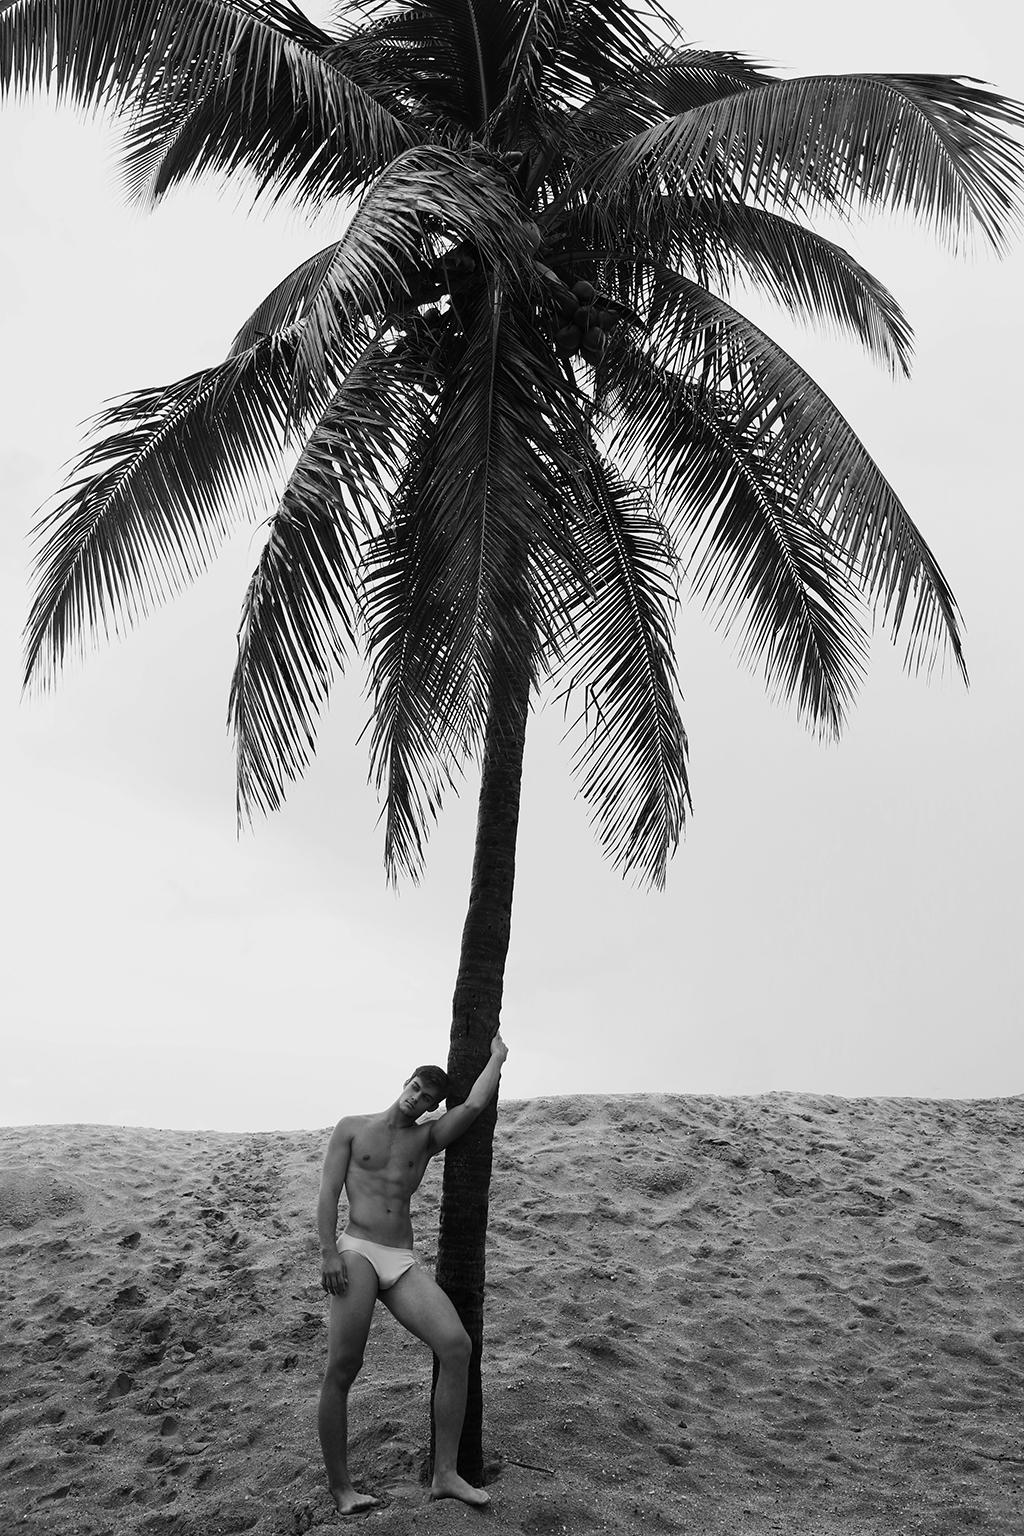 Ricky Cohete Black and White Photograph – Herren und Palme, Baum. Limitierte Auflage einer Schwarz-Weiß-Fotografie